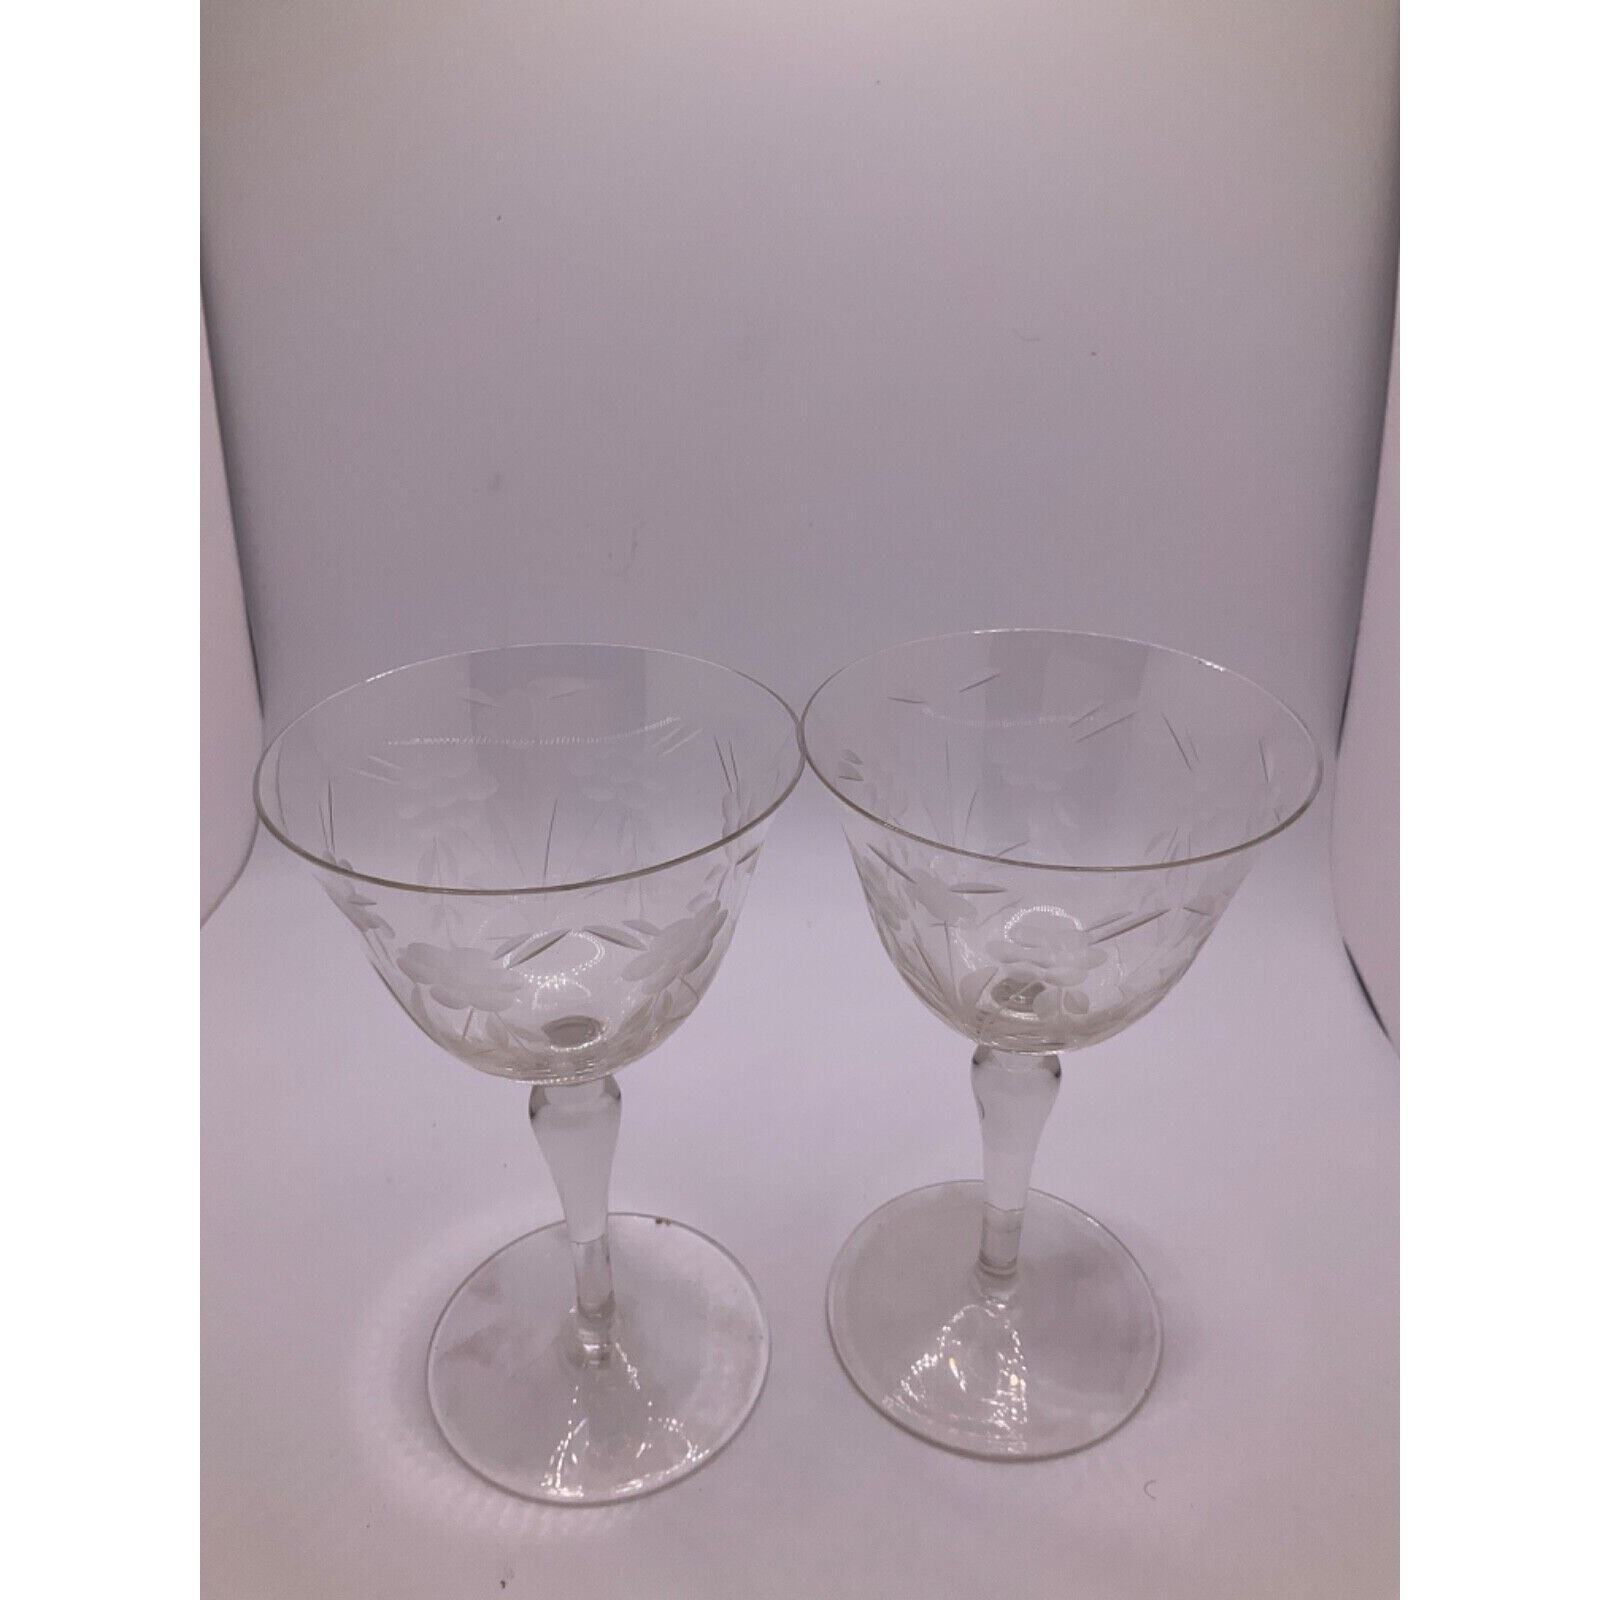 Gorgeous Set of 2 Etched Floral Crystal Wine Glasses - Elegant Stemware